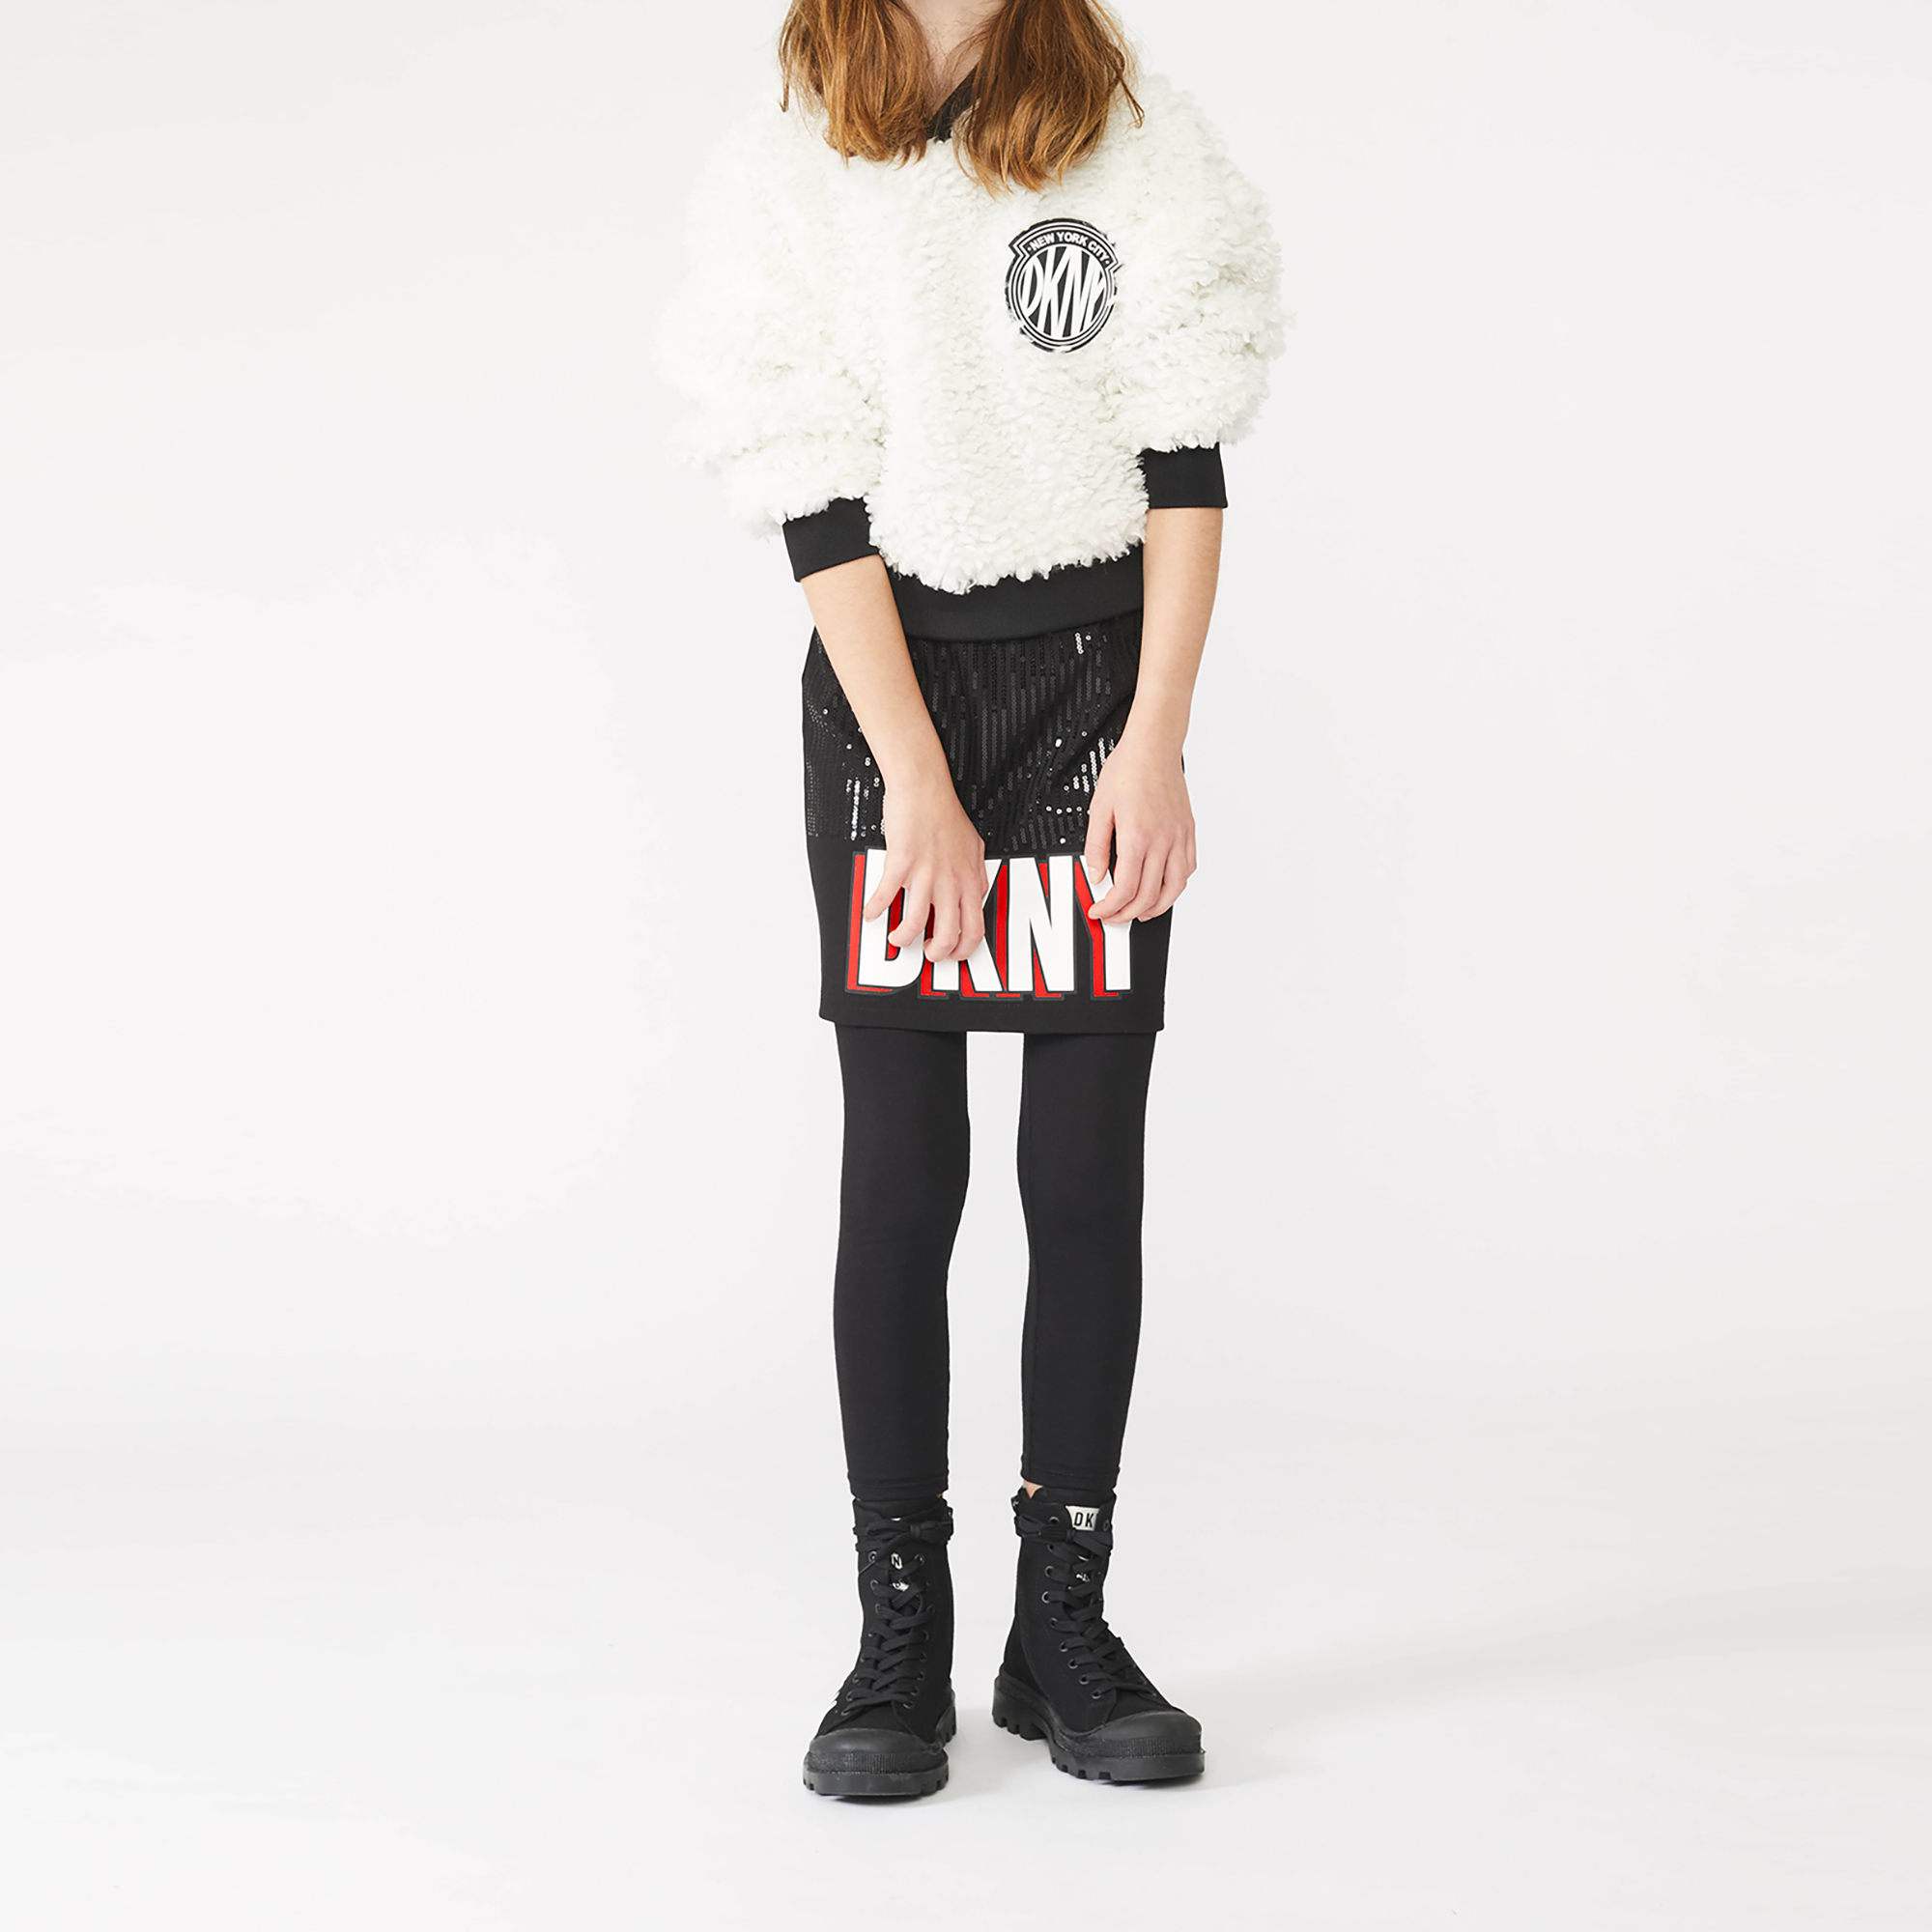 Straight sequined skirt DKNY for GIRL